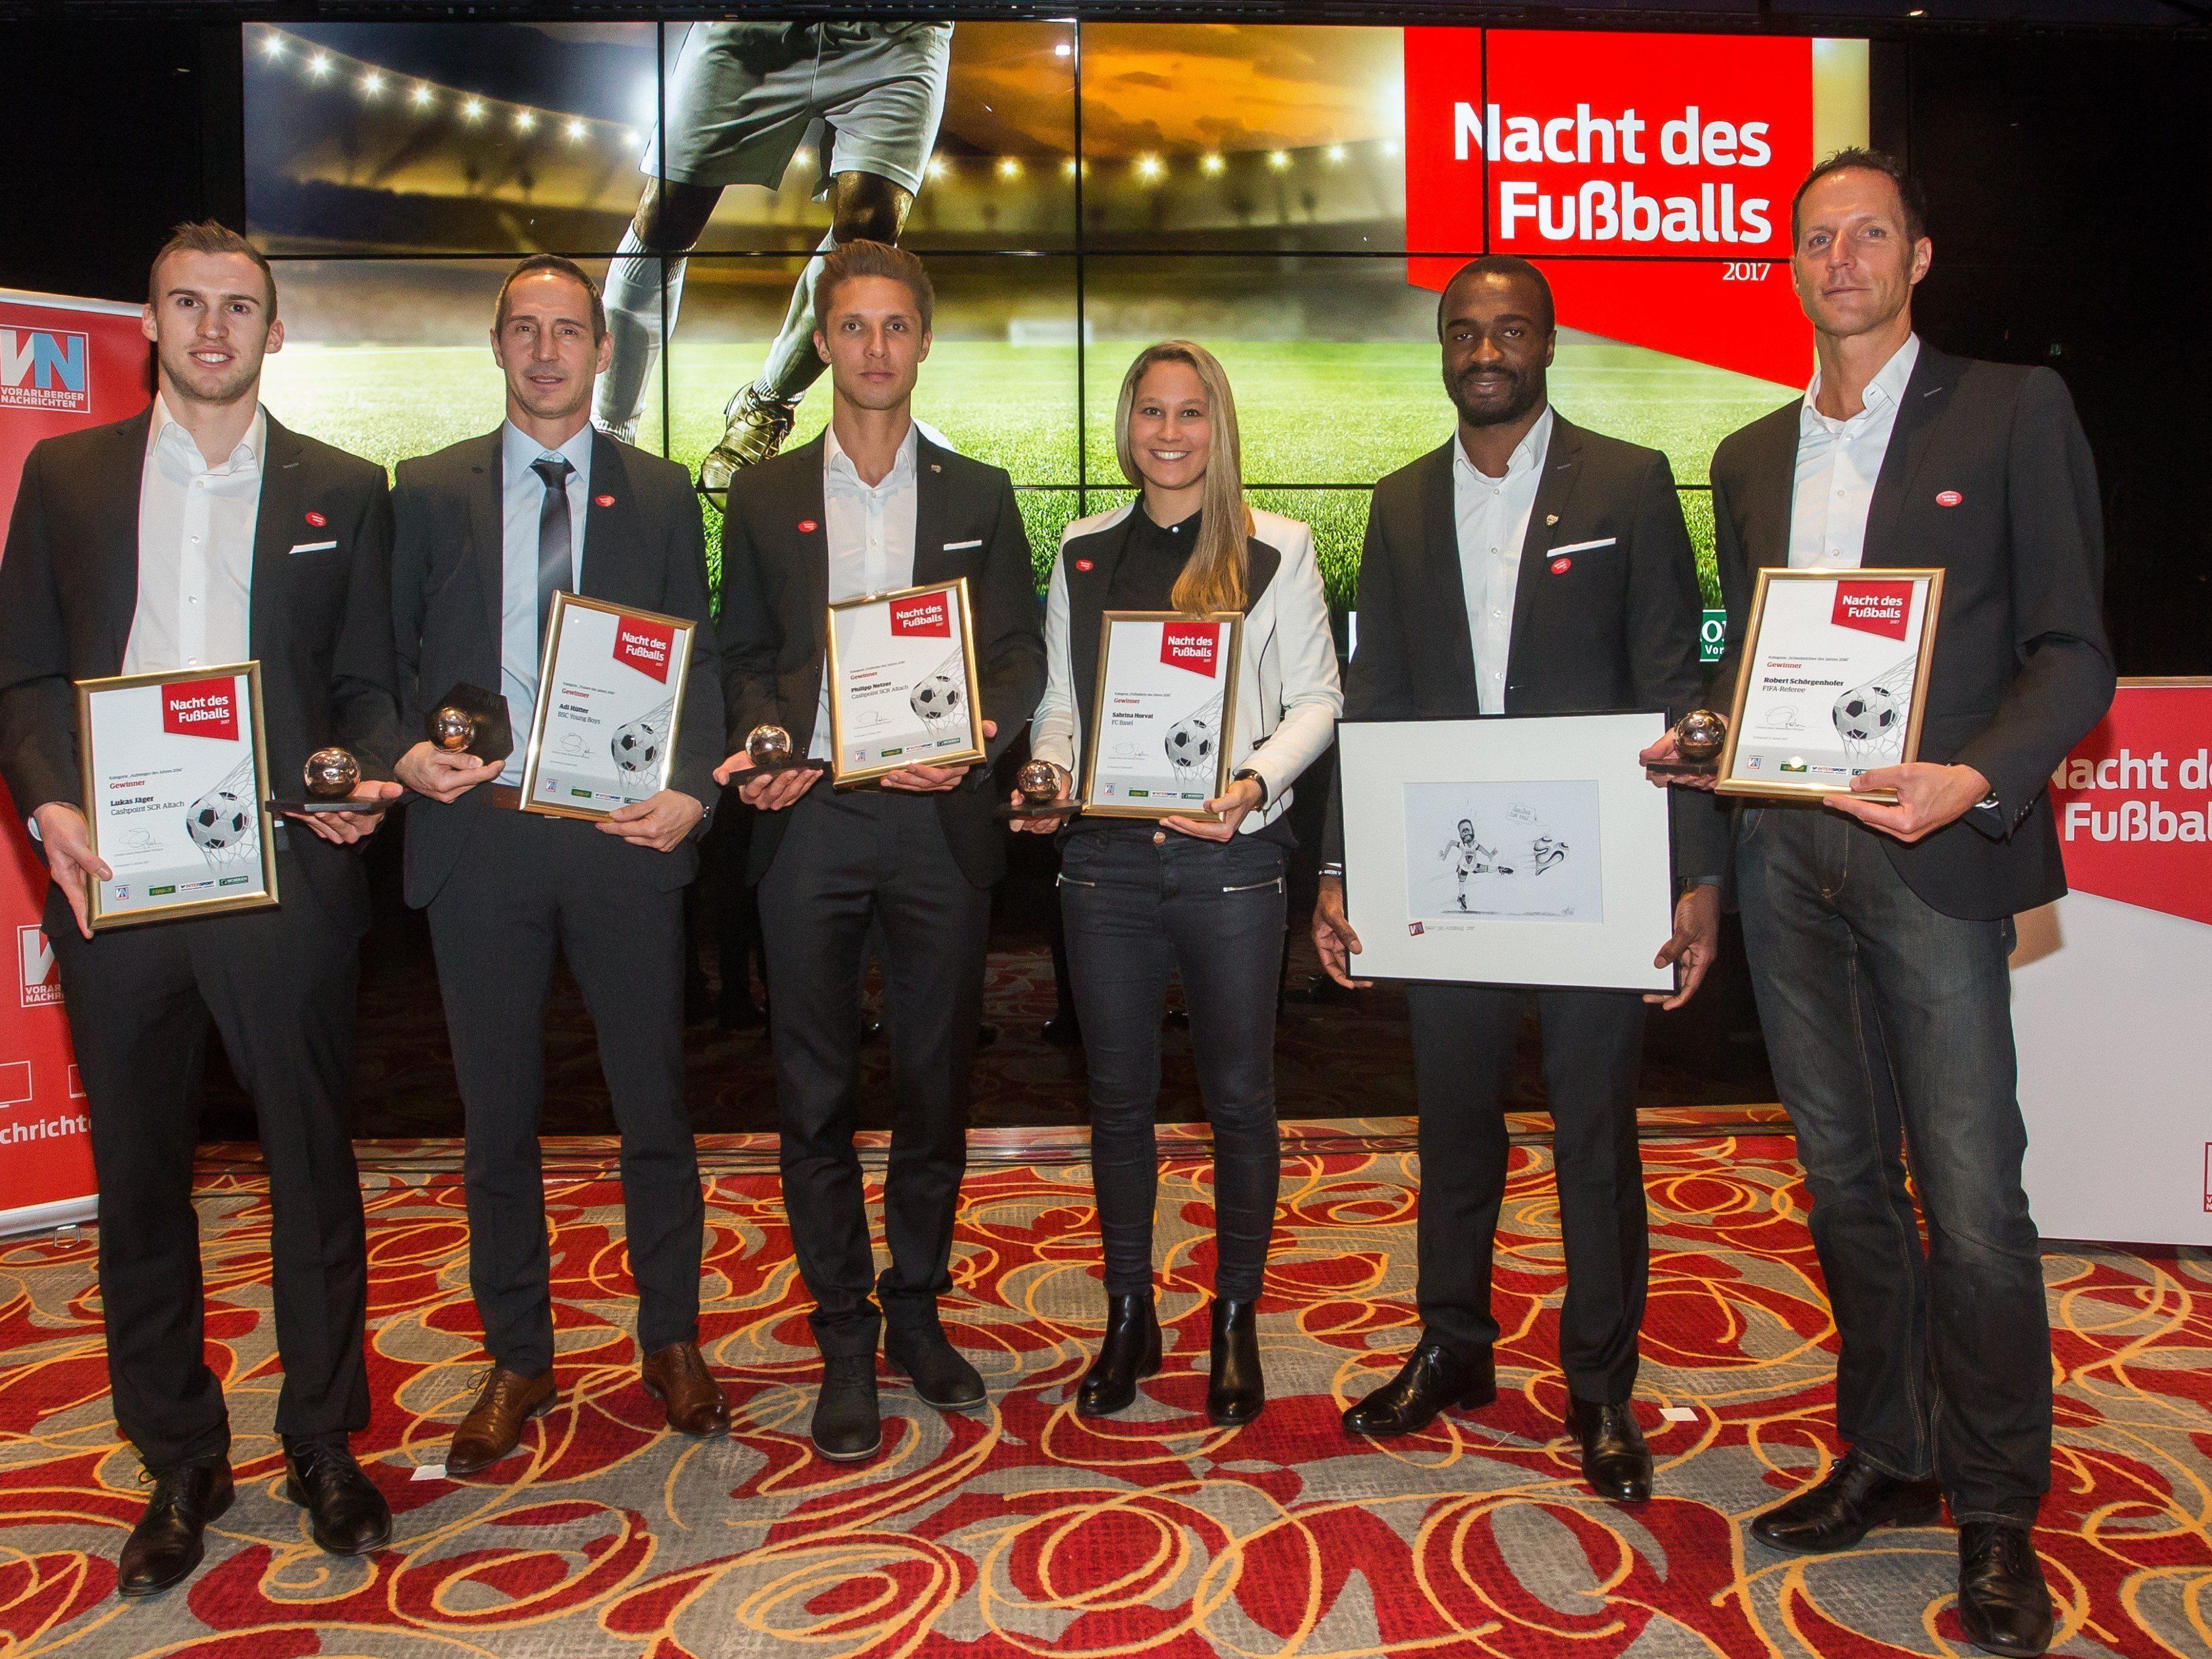 Die Sieger freuten sich über ihre Auszeichnungen, v.l.: Lukas Jäger, Adi Hütter, Philipp Netzer, Sabrina Horvath, Louis Ngwat-Mahop und Robert Schörgenhofer.